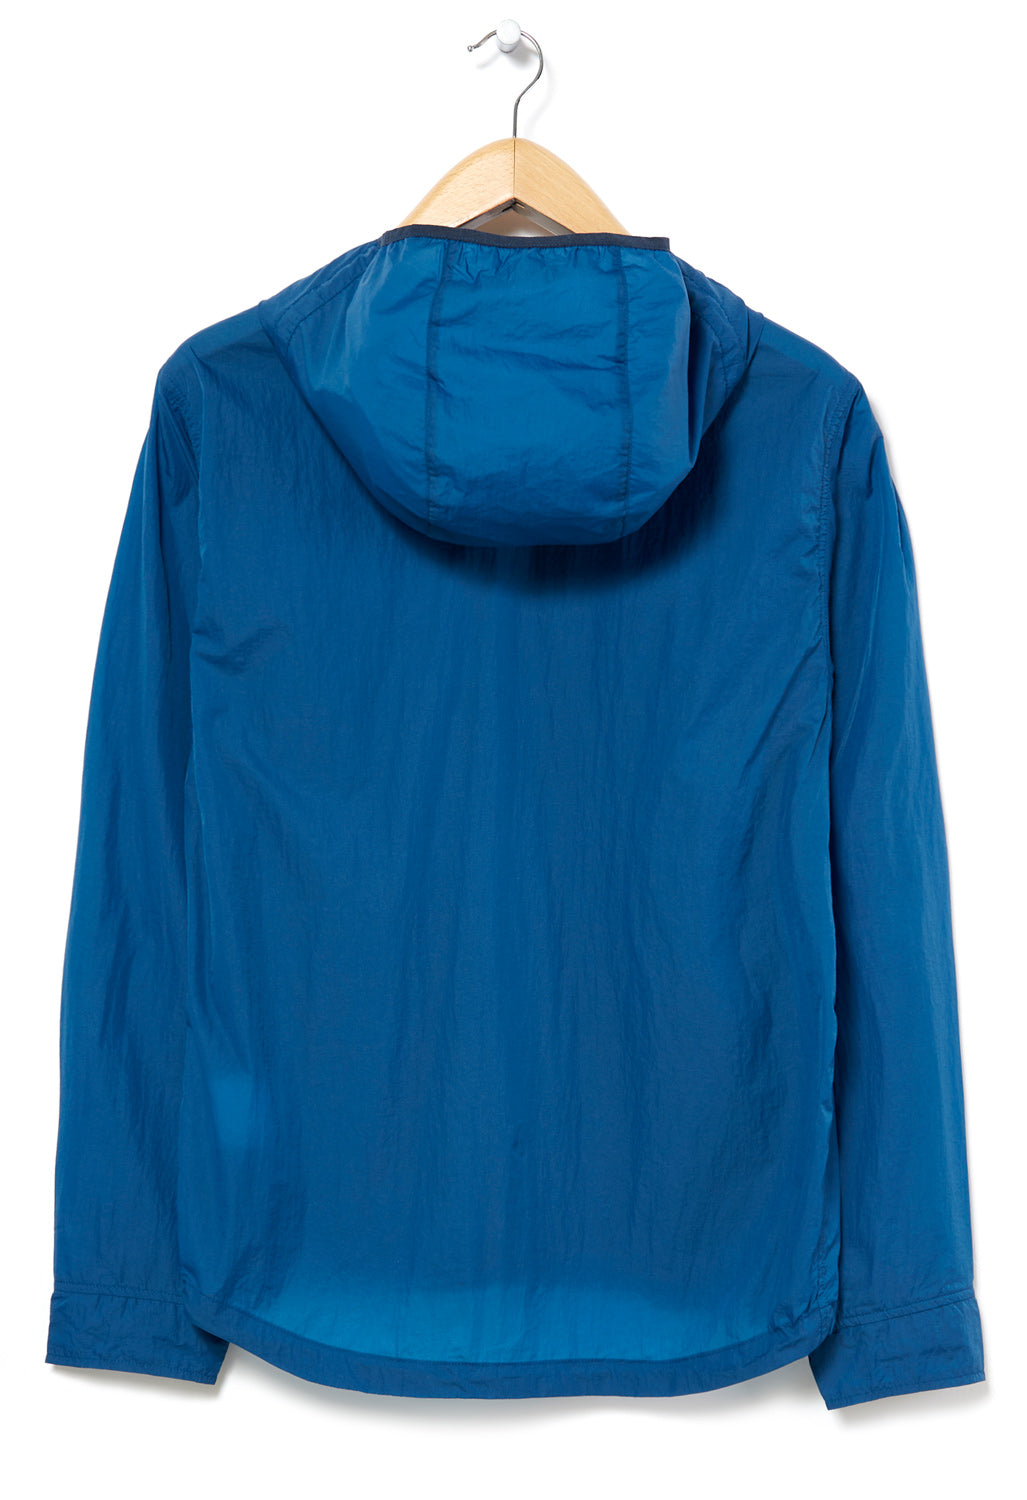 CAYL Nylon Washer Jacket - Blue